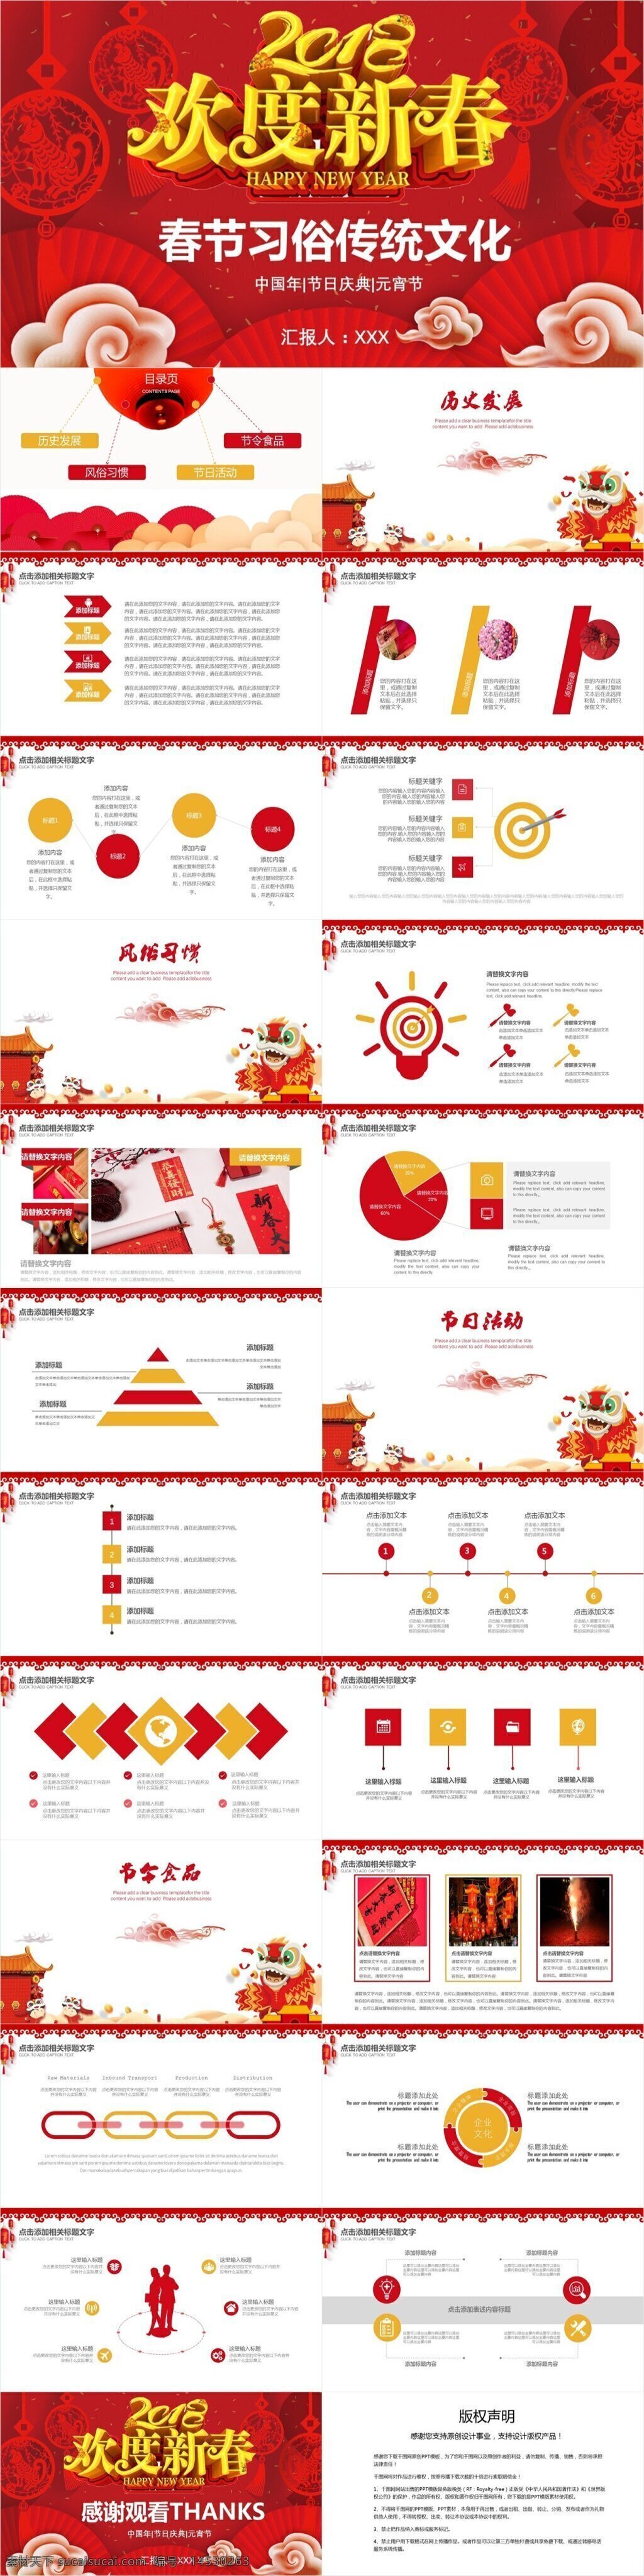 创意 节日 风 春节习俗 传统文化 介绍 模板 风俗习惯 节日风 节日活动 节日食品 历史发展